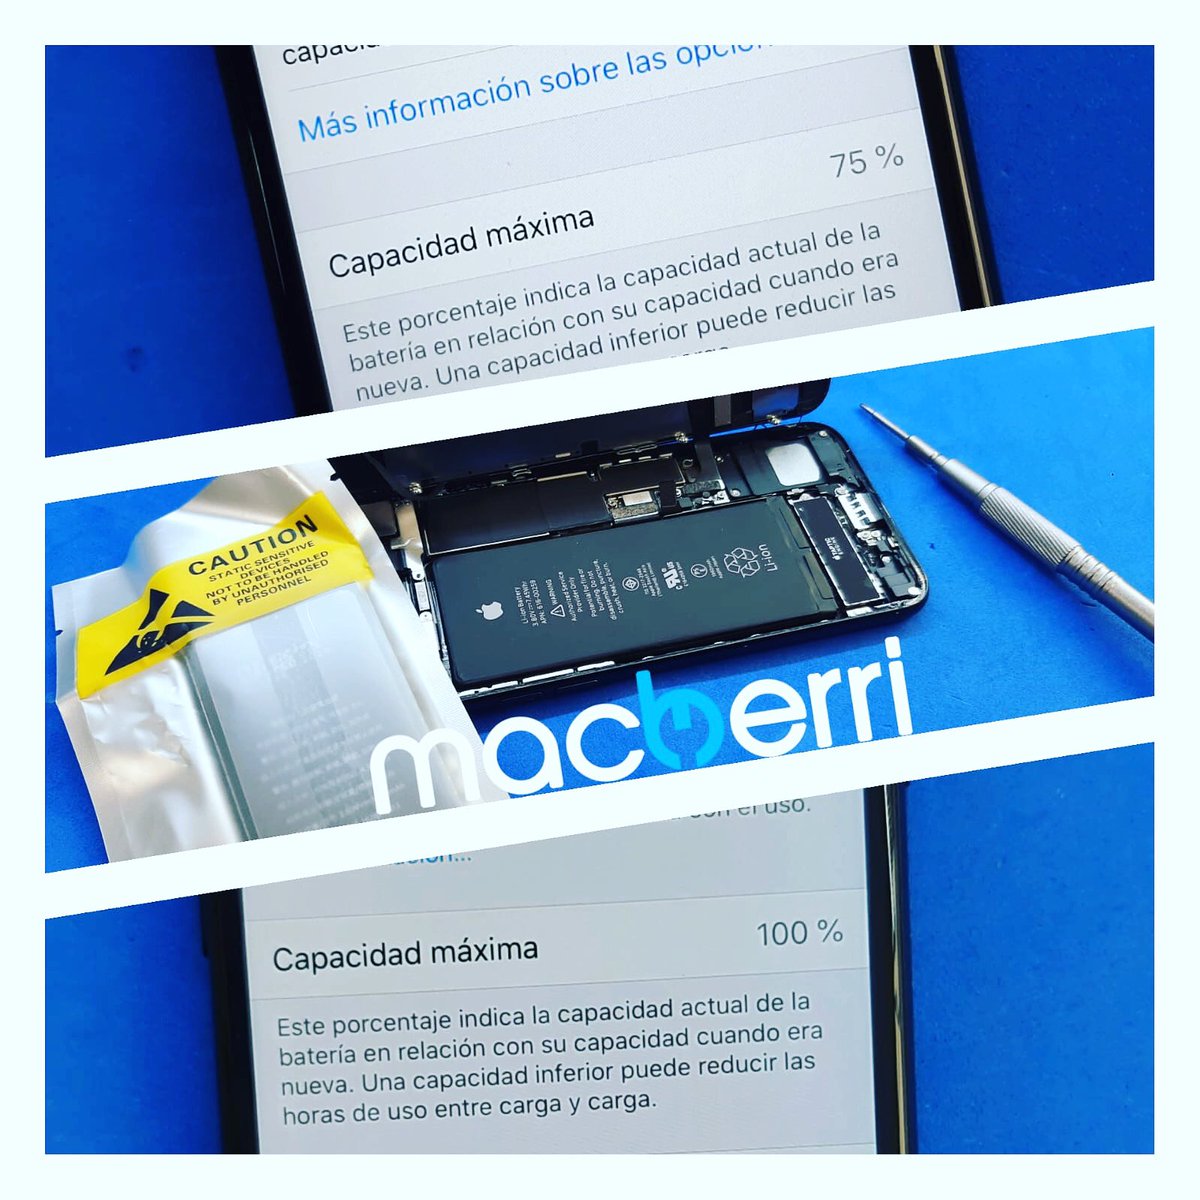 Cambio de batería de iPhone 7. Si se ralentiza tu iPhone es posible que tú batería este pidiendo el cambio. Llámanos!!!
☎️684051212
macberri.com
#macberri #macberribilbao #reparationiphone #reparaciónmóviles